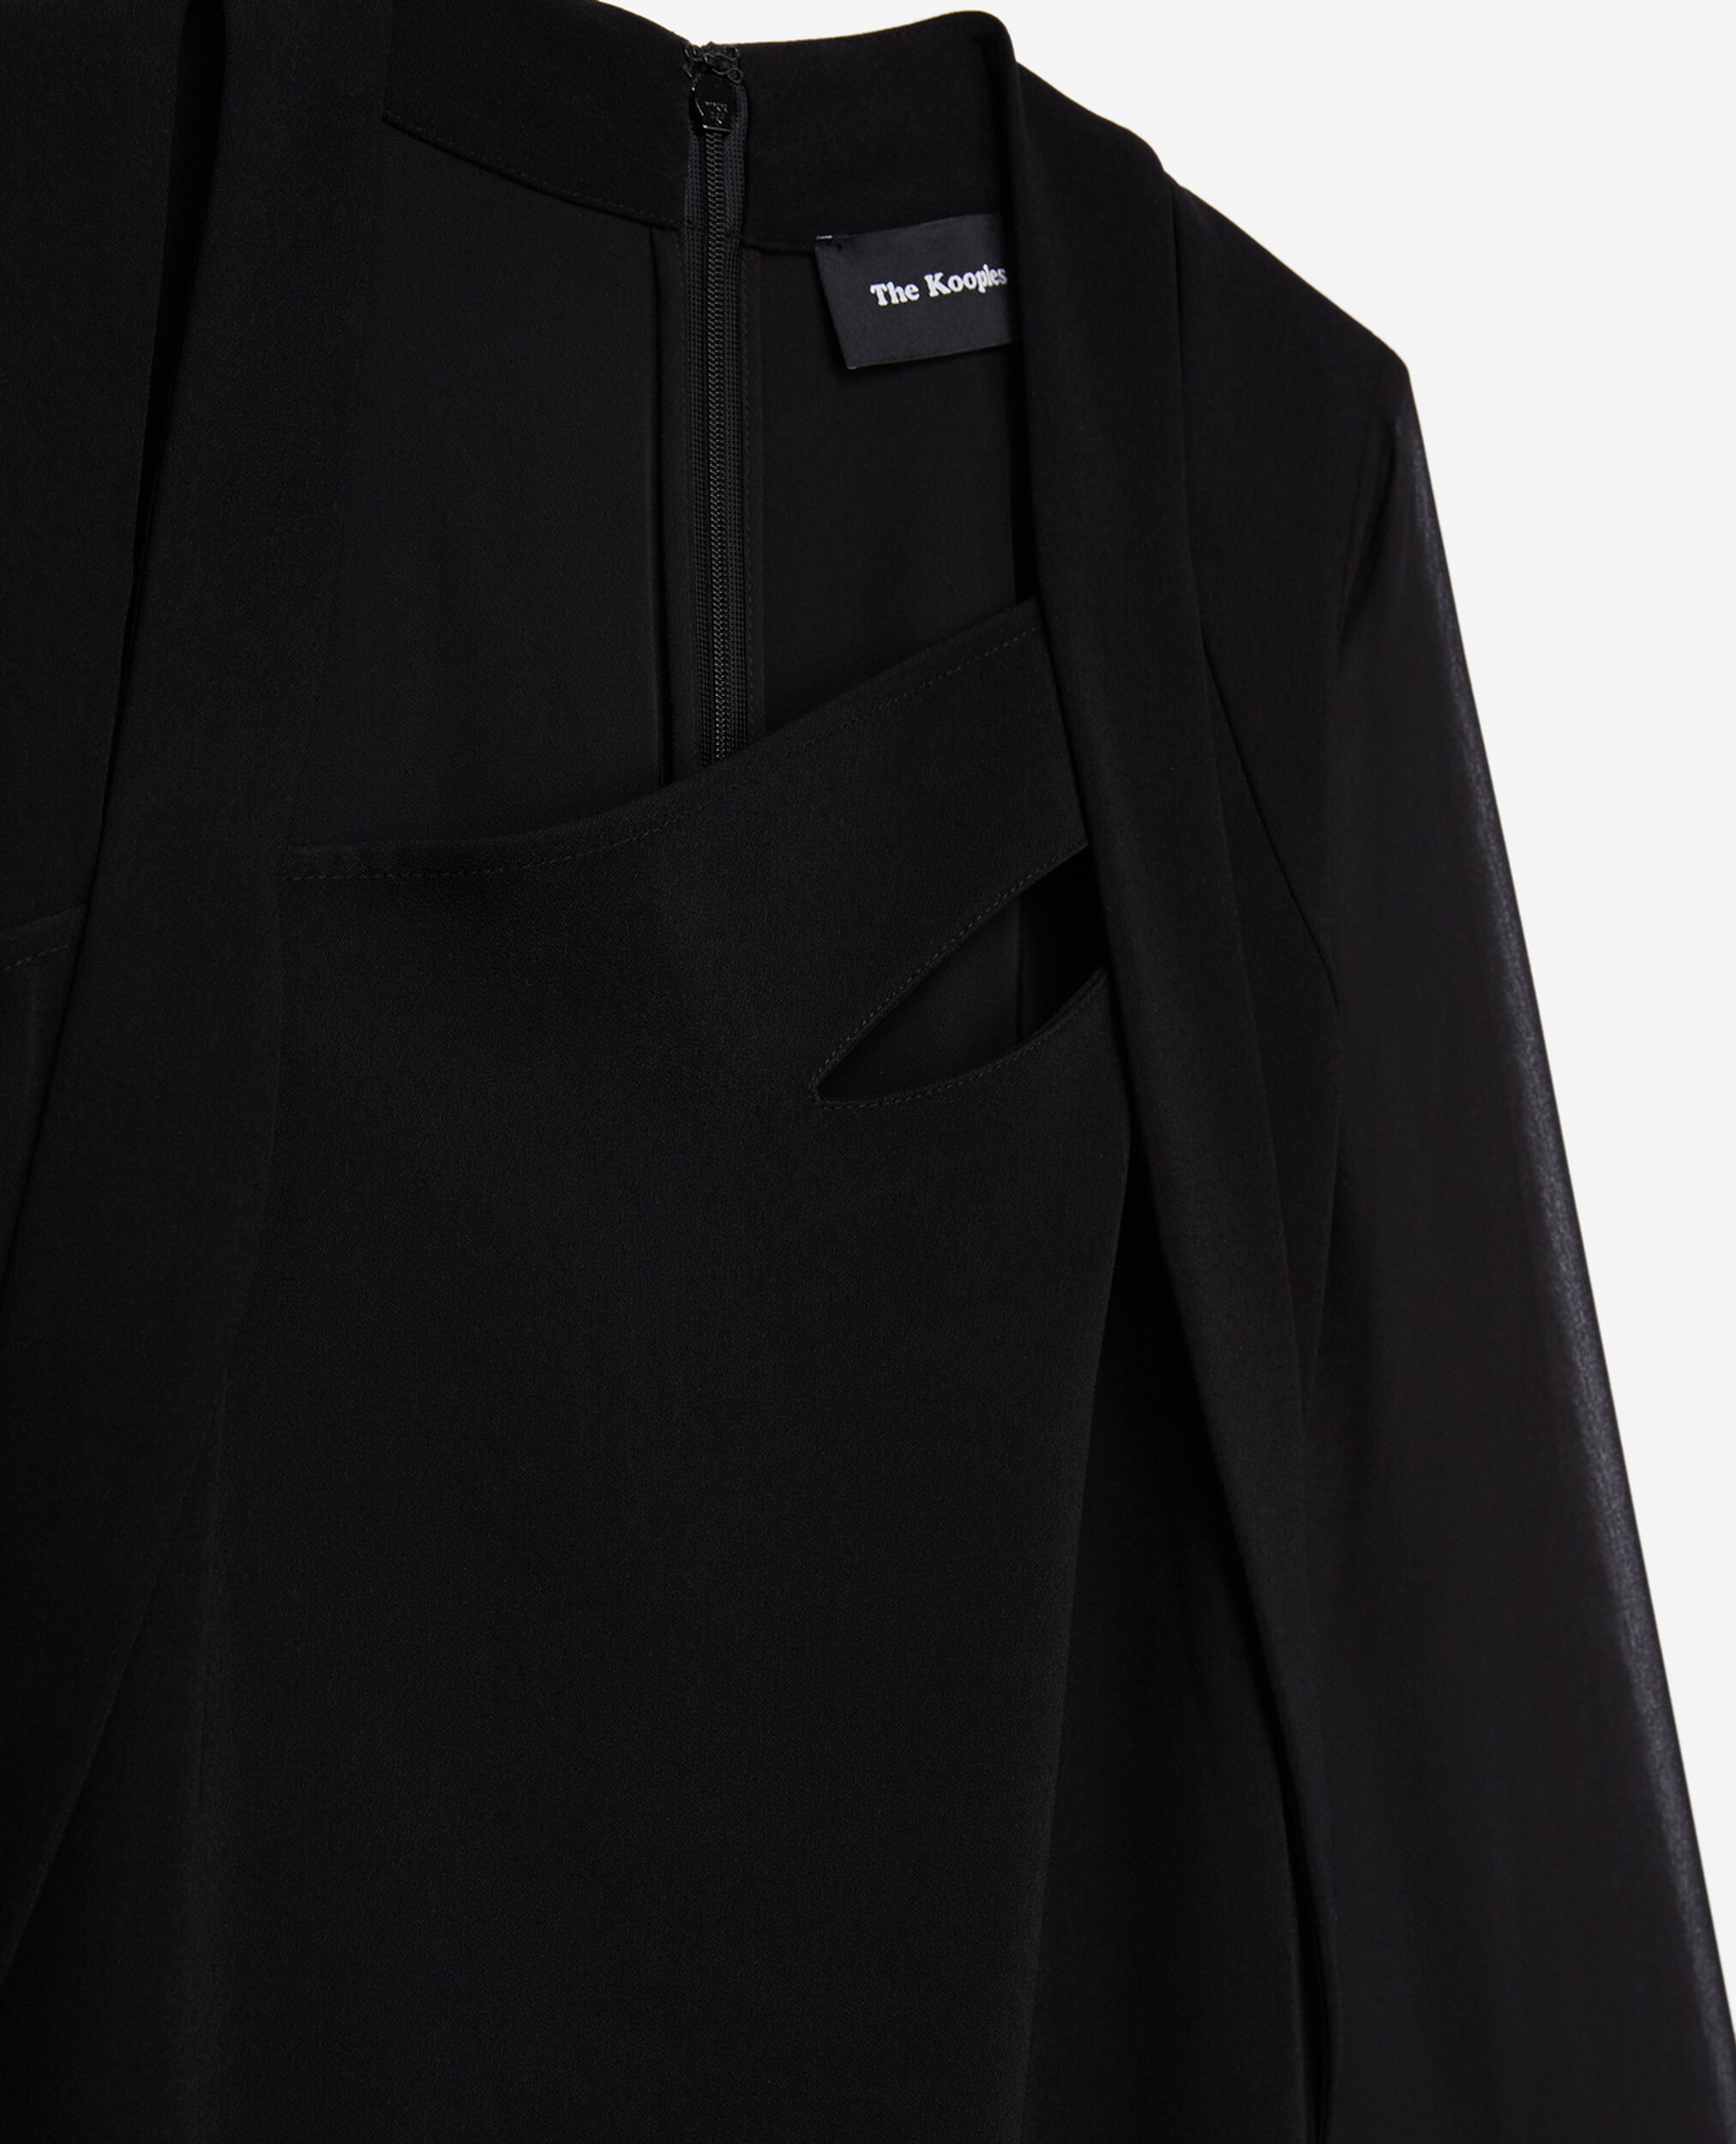 Long-sleeved black dress with split, BLACK, hi-res image number null